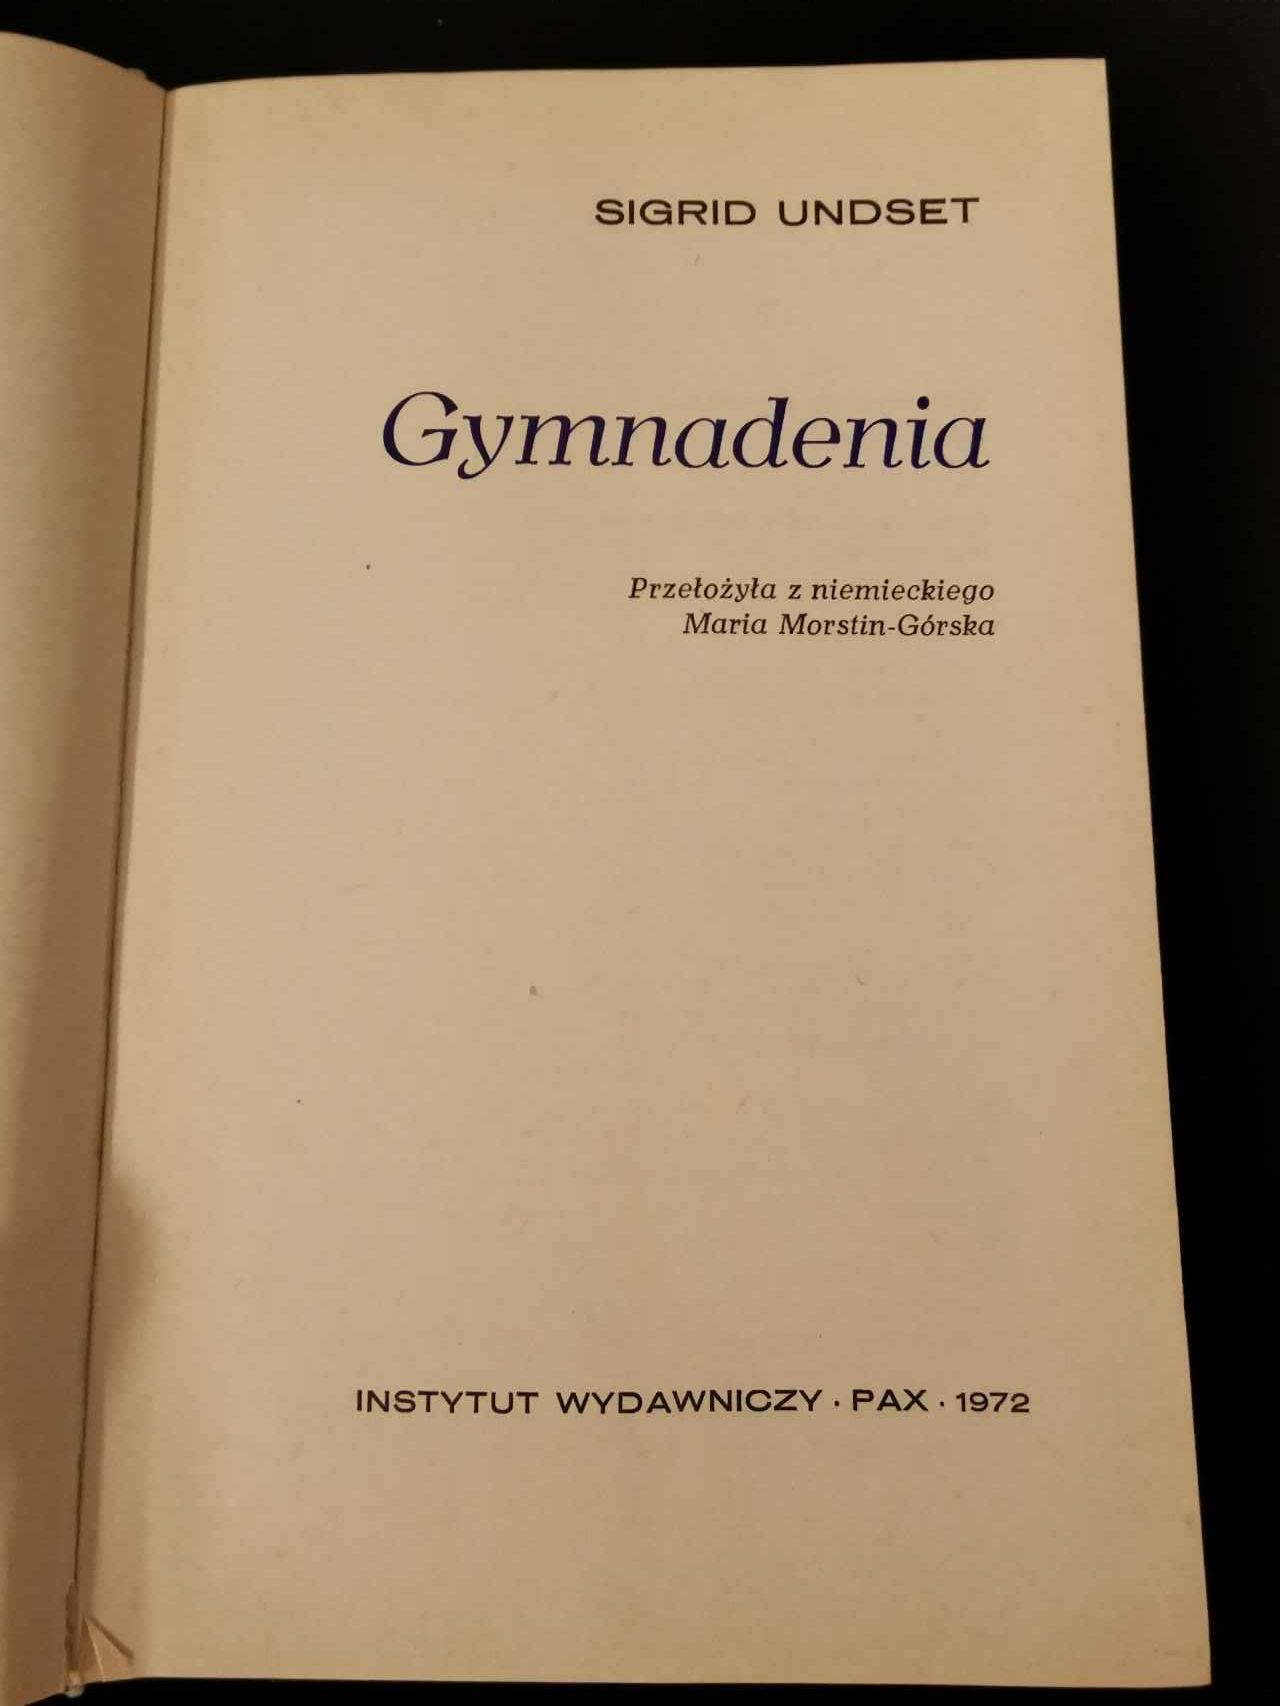 Gymnadenia - Sigrid Undset wersja polska z 1972 roku